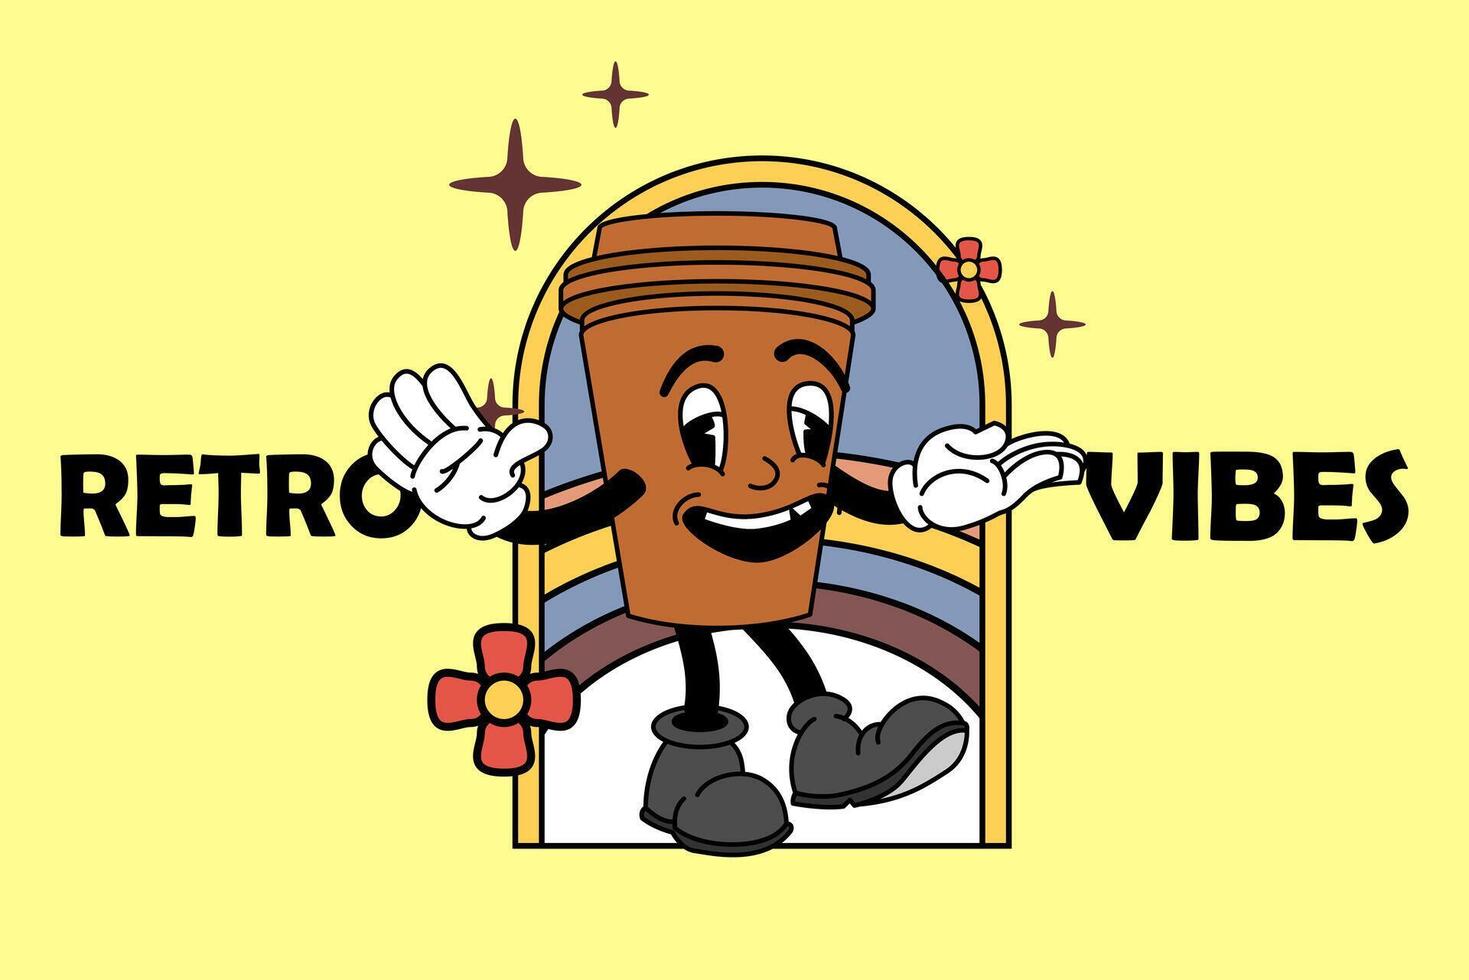 Retro Vintage Cartoon Mascot vector